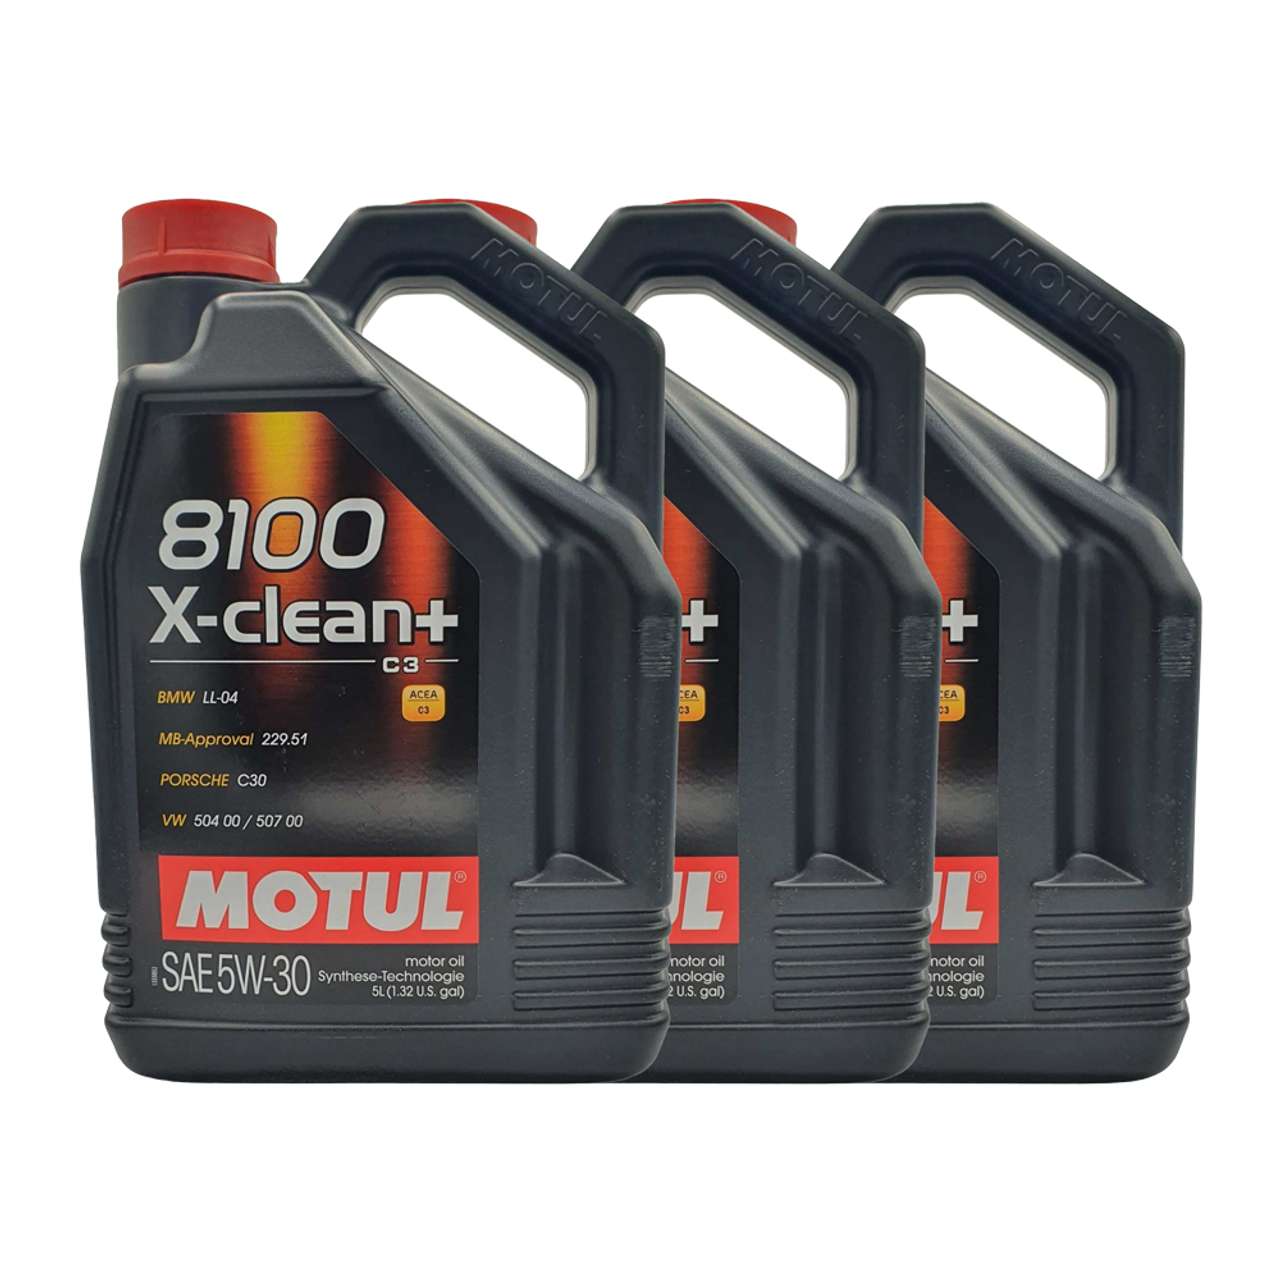 Motul 8100 X-clean+ 5W-30 3x5 Liter